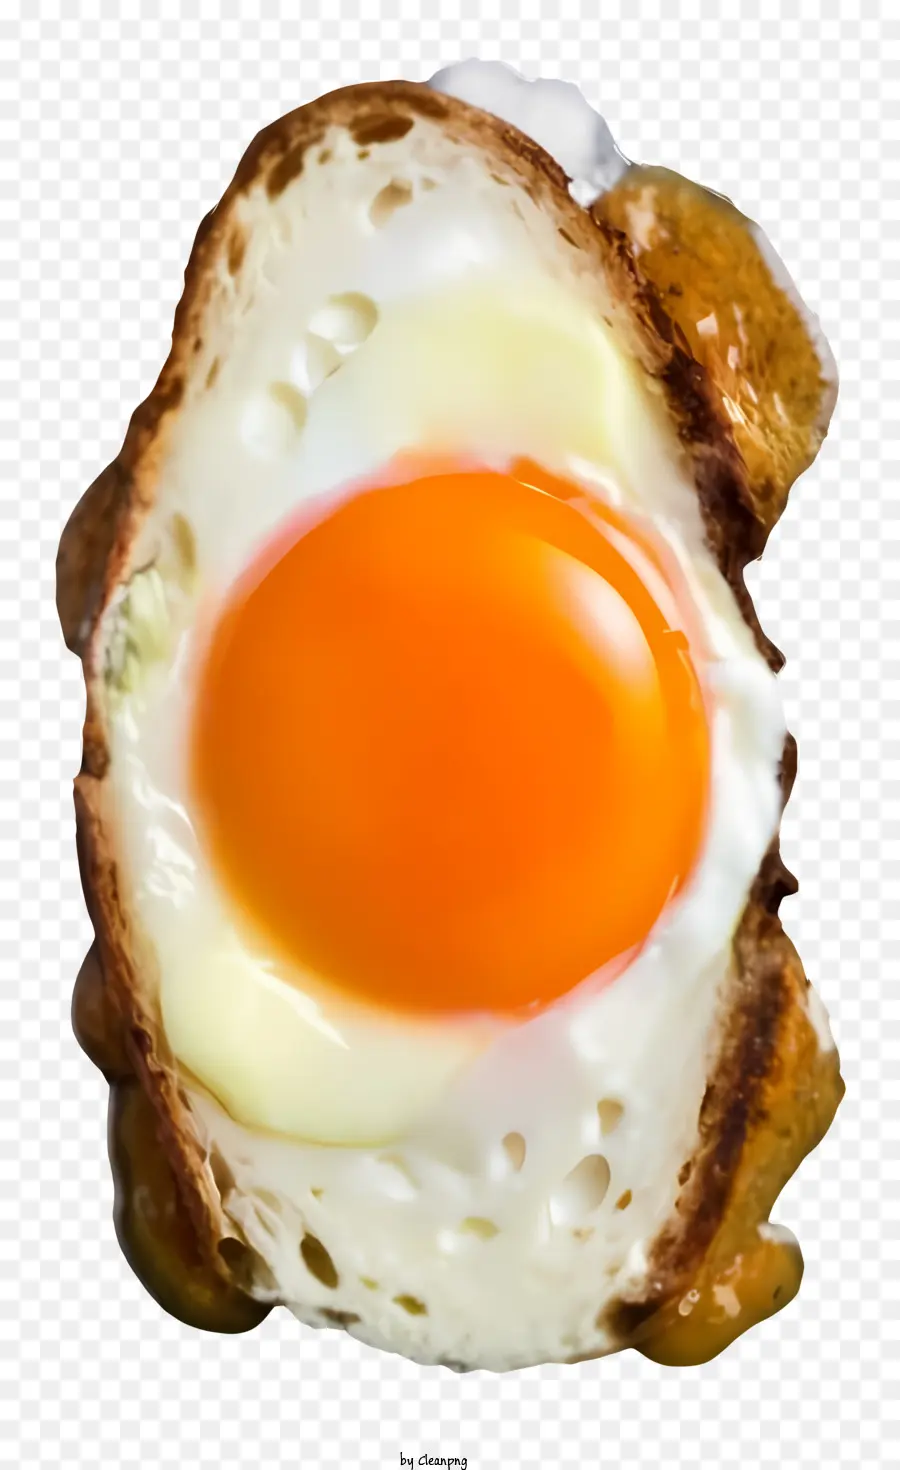 lòng đỏ trứng nướng kết cấu giòn mịn bôi lòng đỏ trứng giòn - Trứng với lòng đỏ bị hỏng và bánh mì giòn